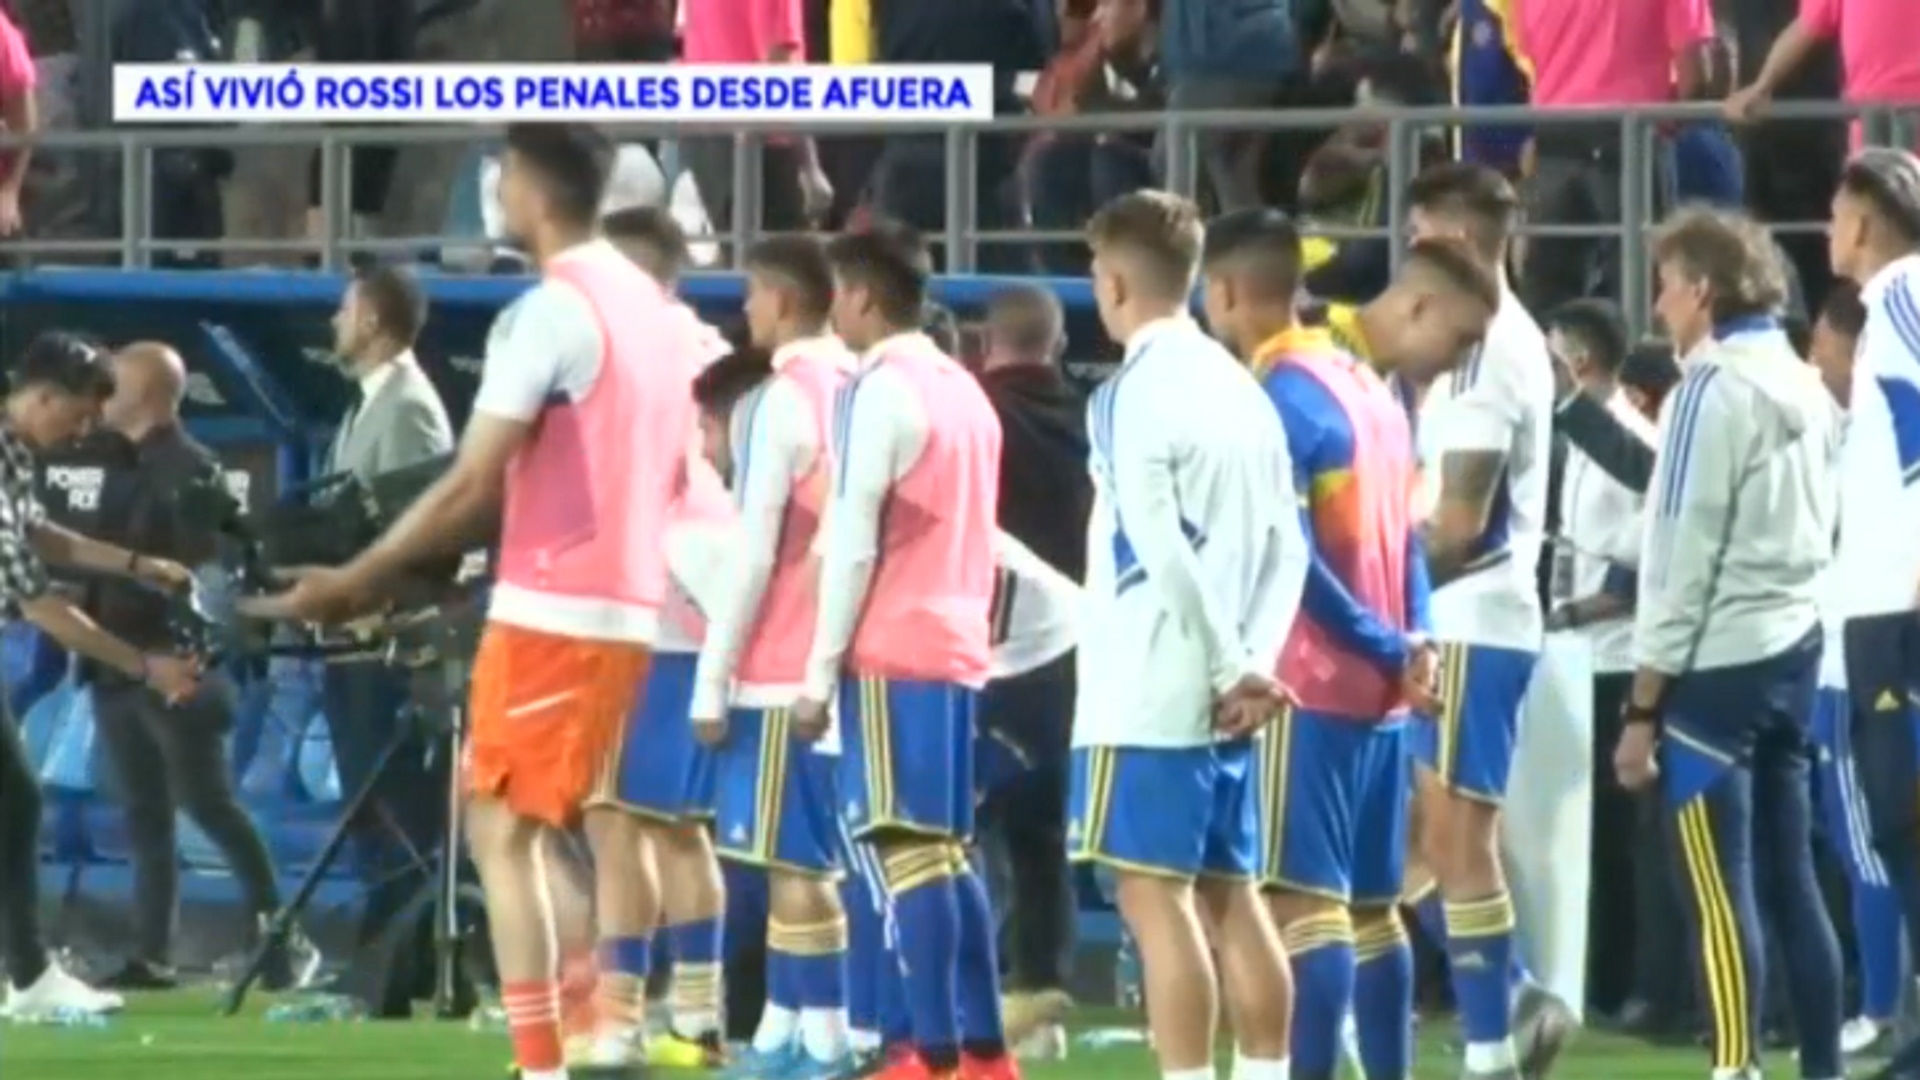 Los gestos de Agustín Rossi durante la definición por penales entre Boca y Patronato: ¿adivinó uno de los disparos decisivos?